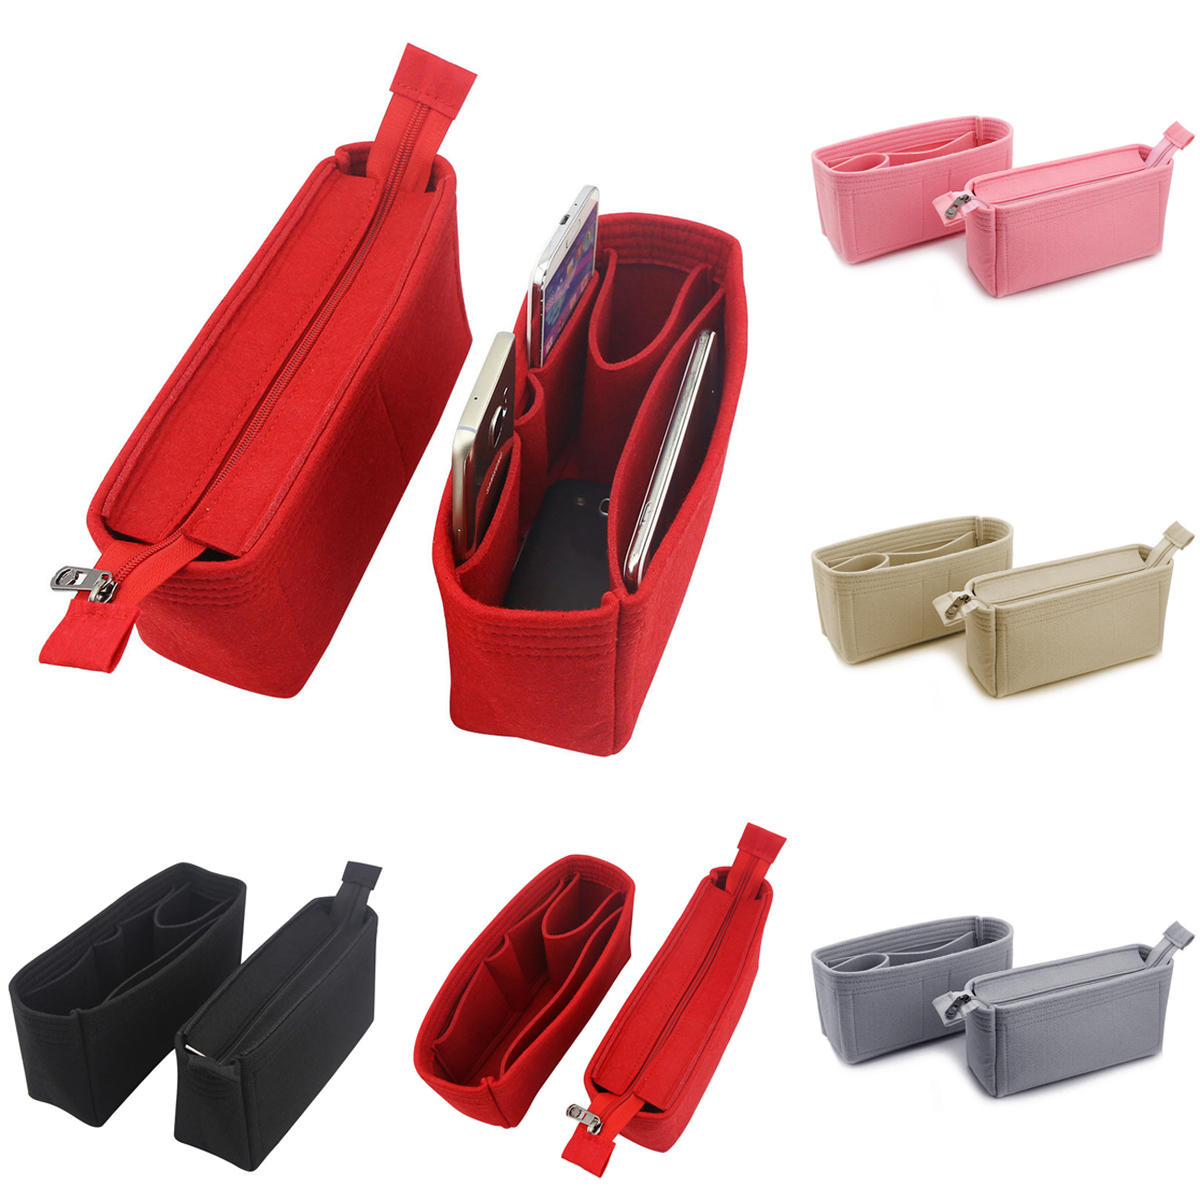 

2Pcs Felt Insert Organizer Bag Handbag Holder Multi Pocket Purse Cosmetic Zipper